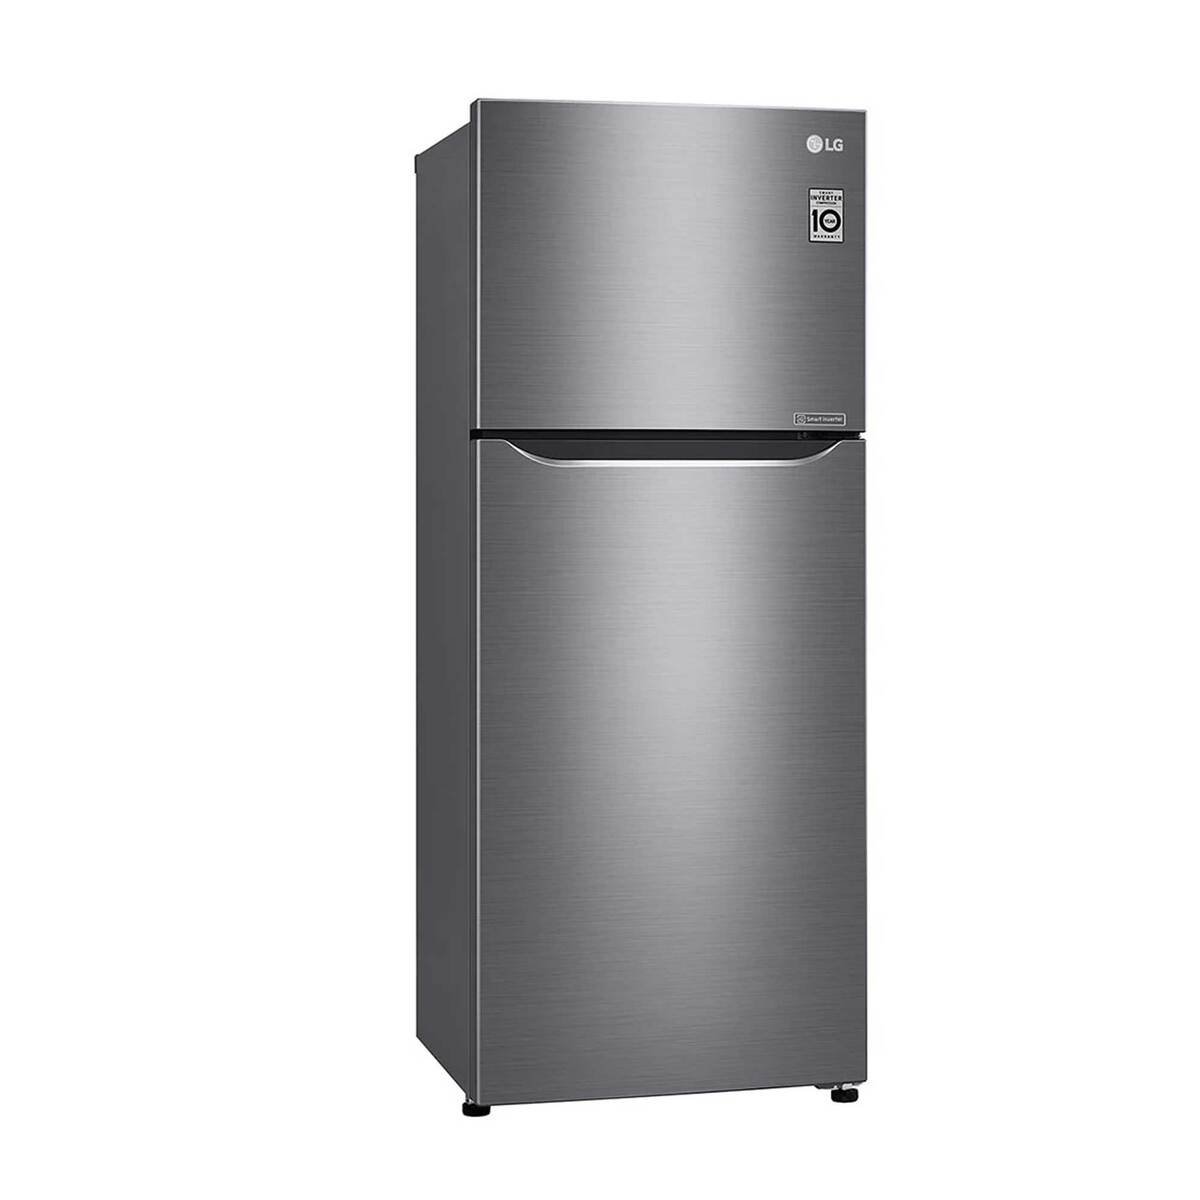 LG Double Door Refrigerator GR-C342SLBB 234LTR